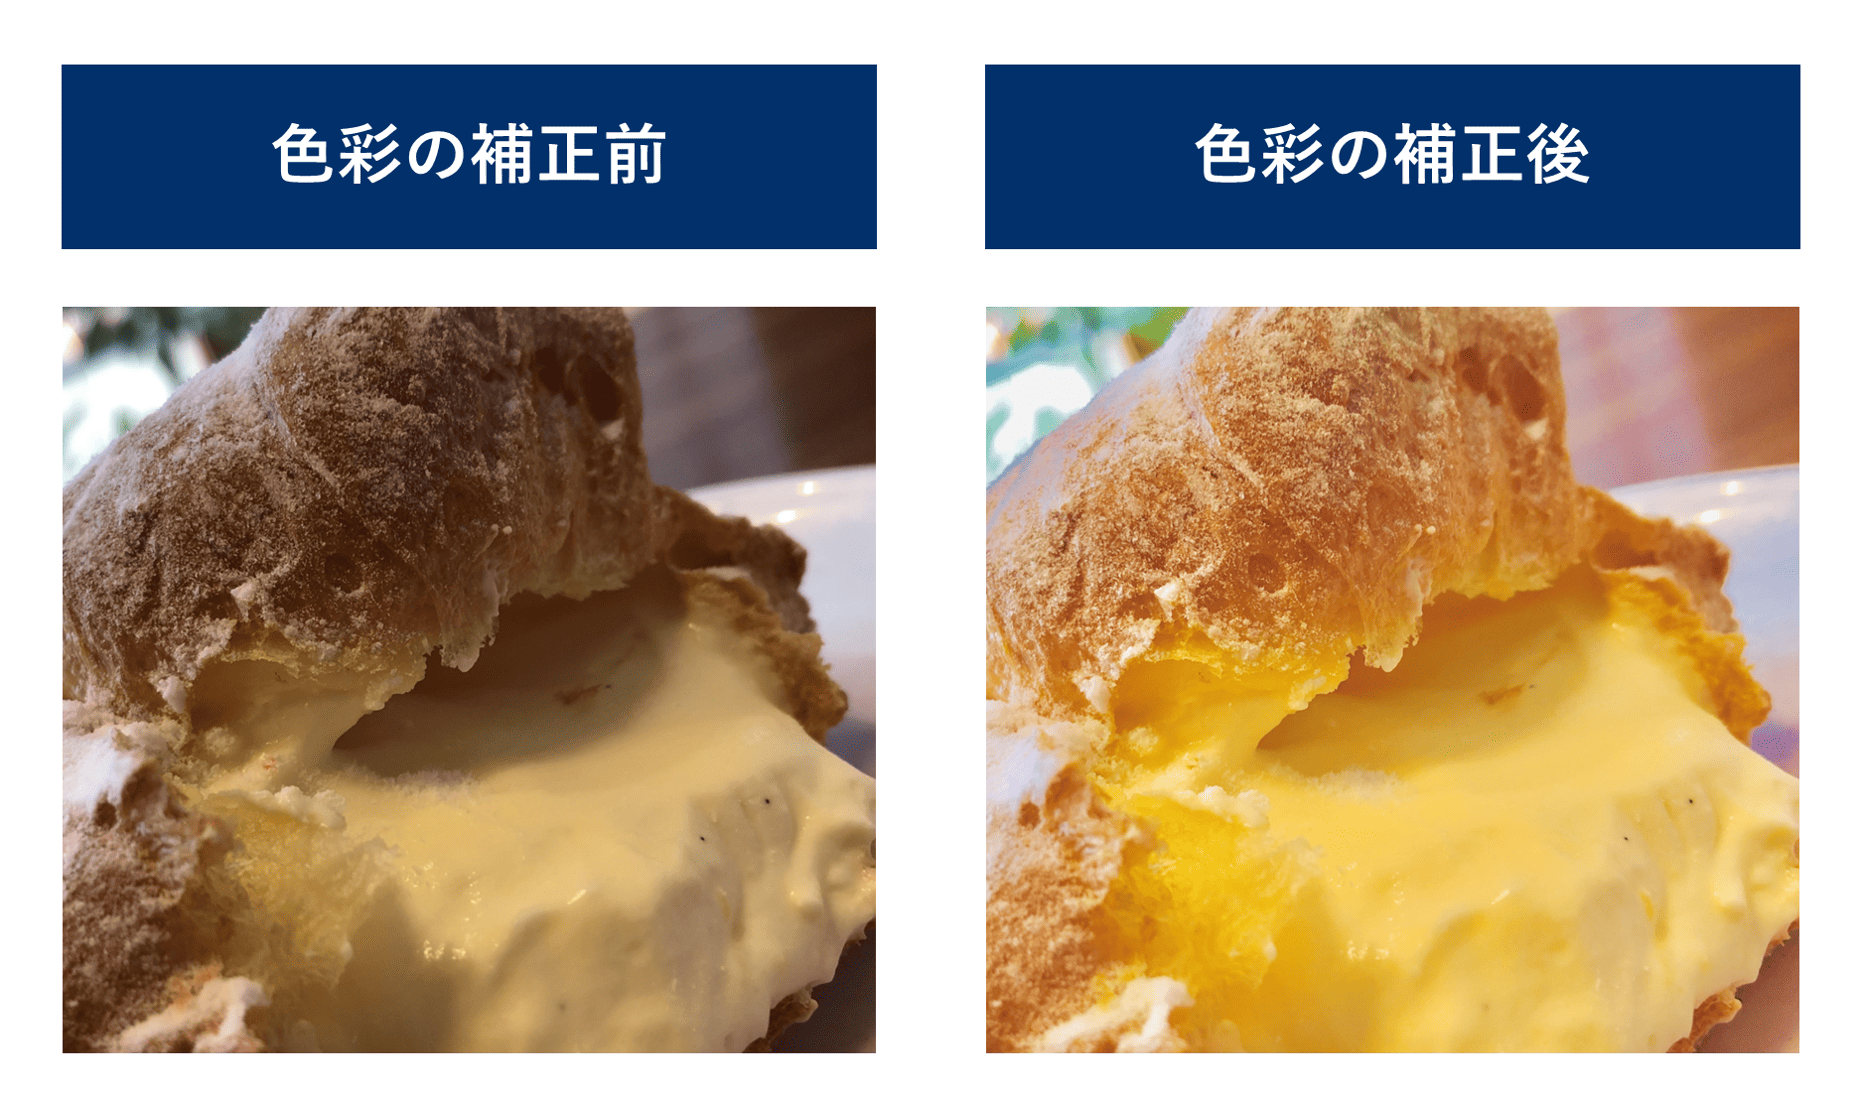 シュークリームの写真の色彩の補正前と後の比較